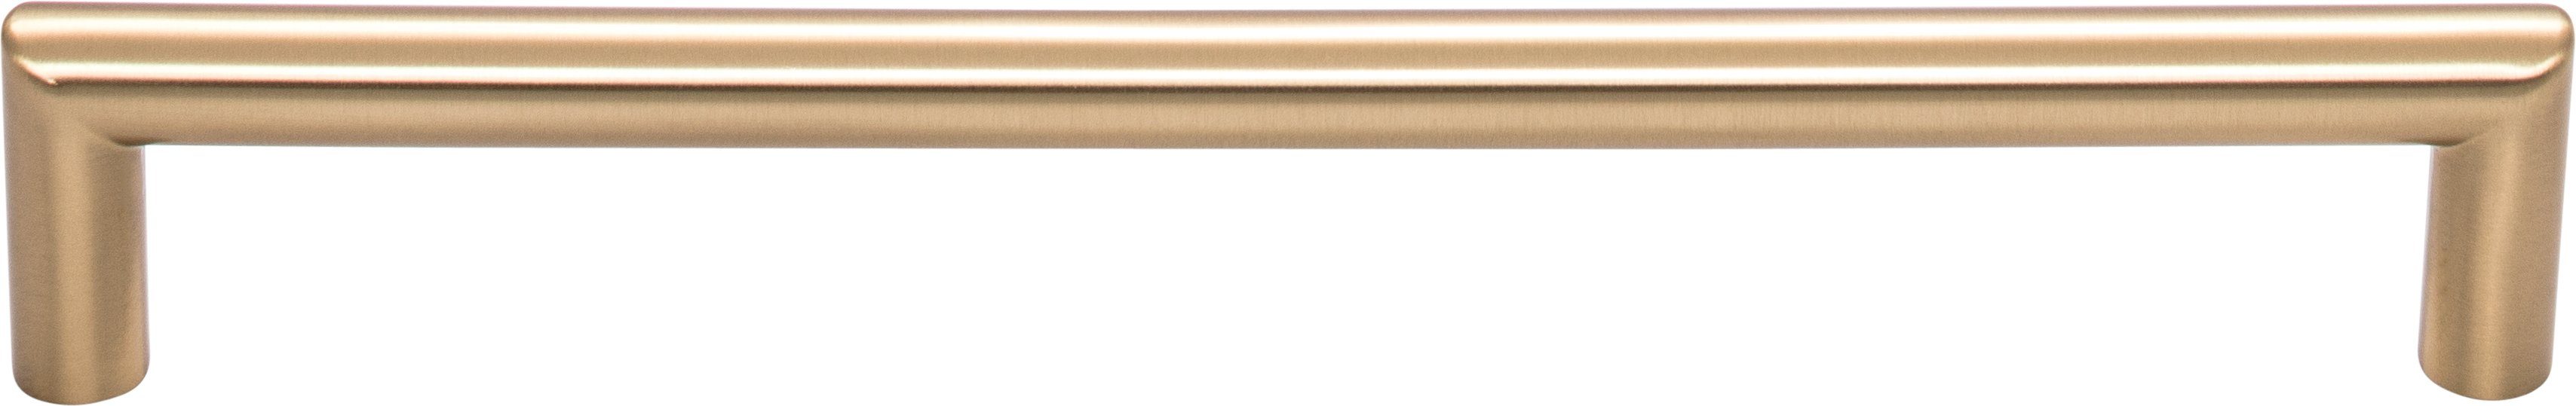 7-9/16in (192mm) Kinney Pull Honey Bronze - Top Knobs T-TK944HB